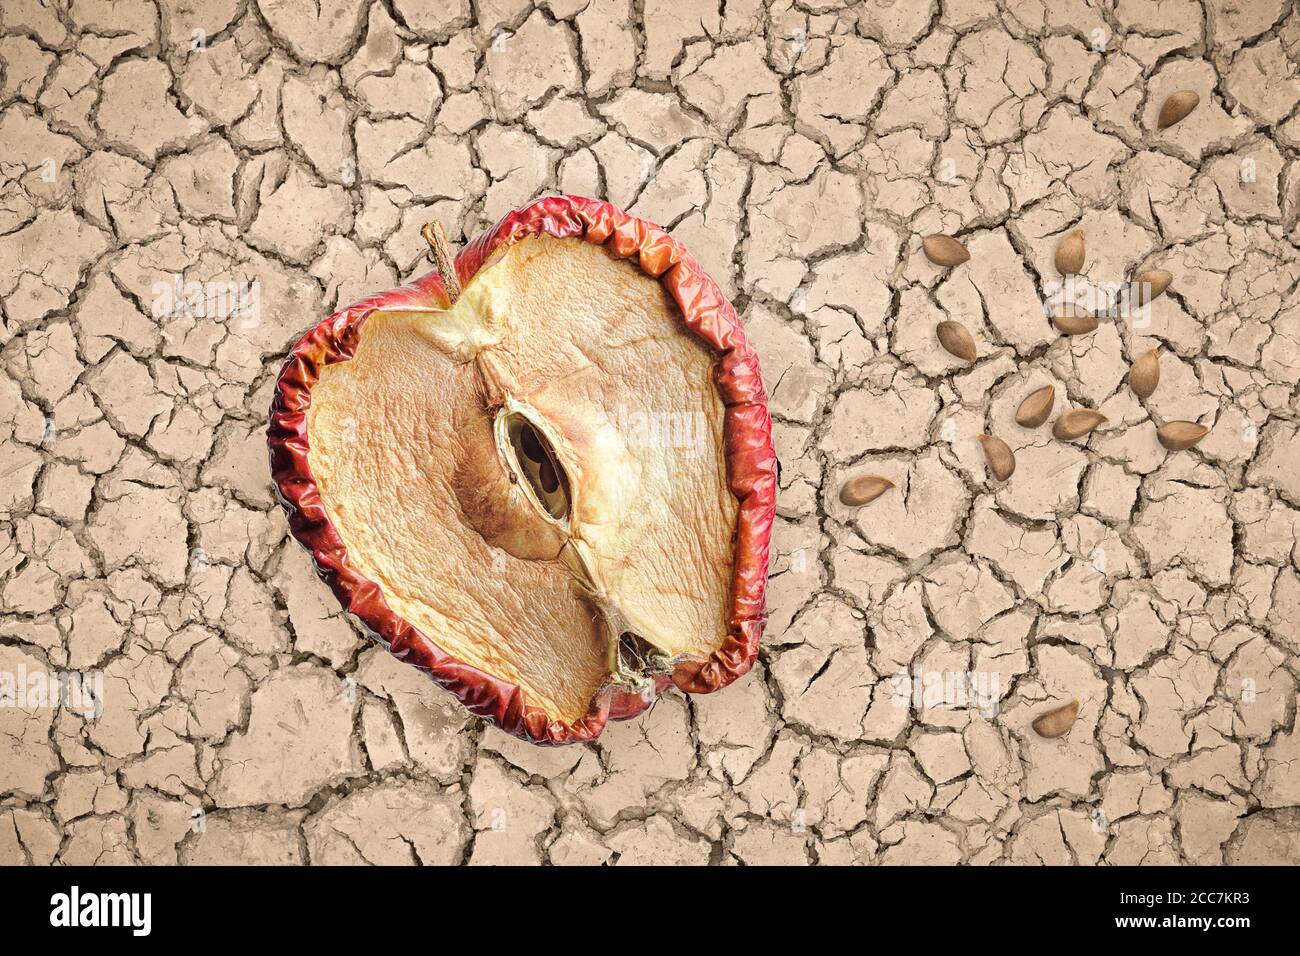 Halb verfaulter Apfel und Samen auf trockenem und rissiger Erde, hoffnungsloses Konzept ohne Zukunft. Stockfoto